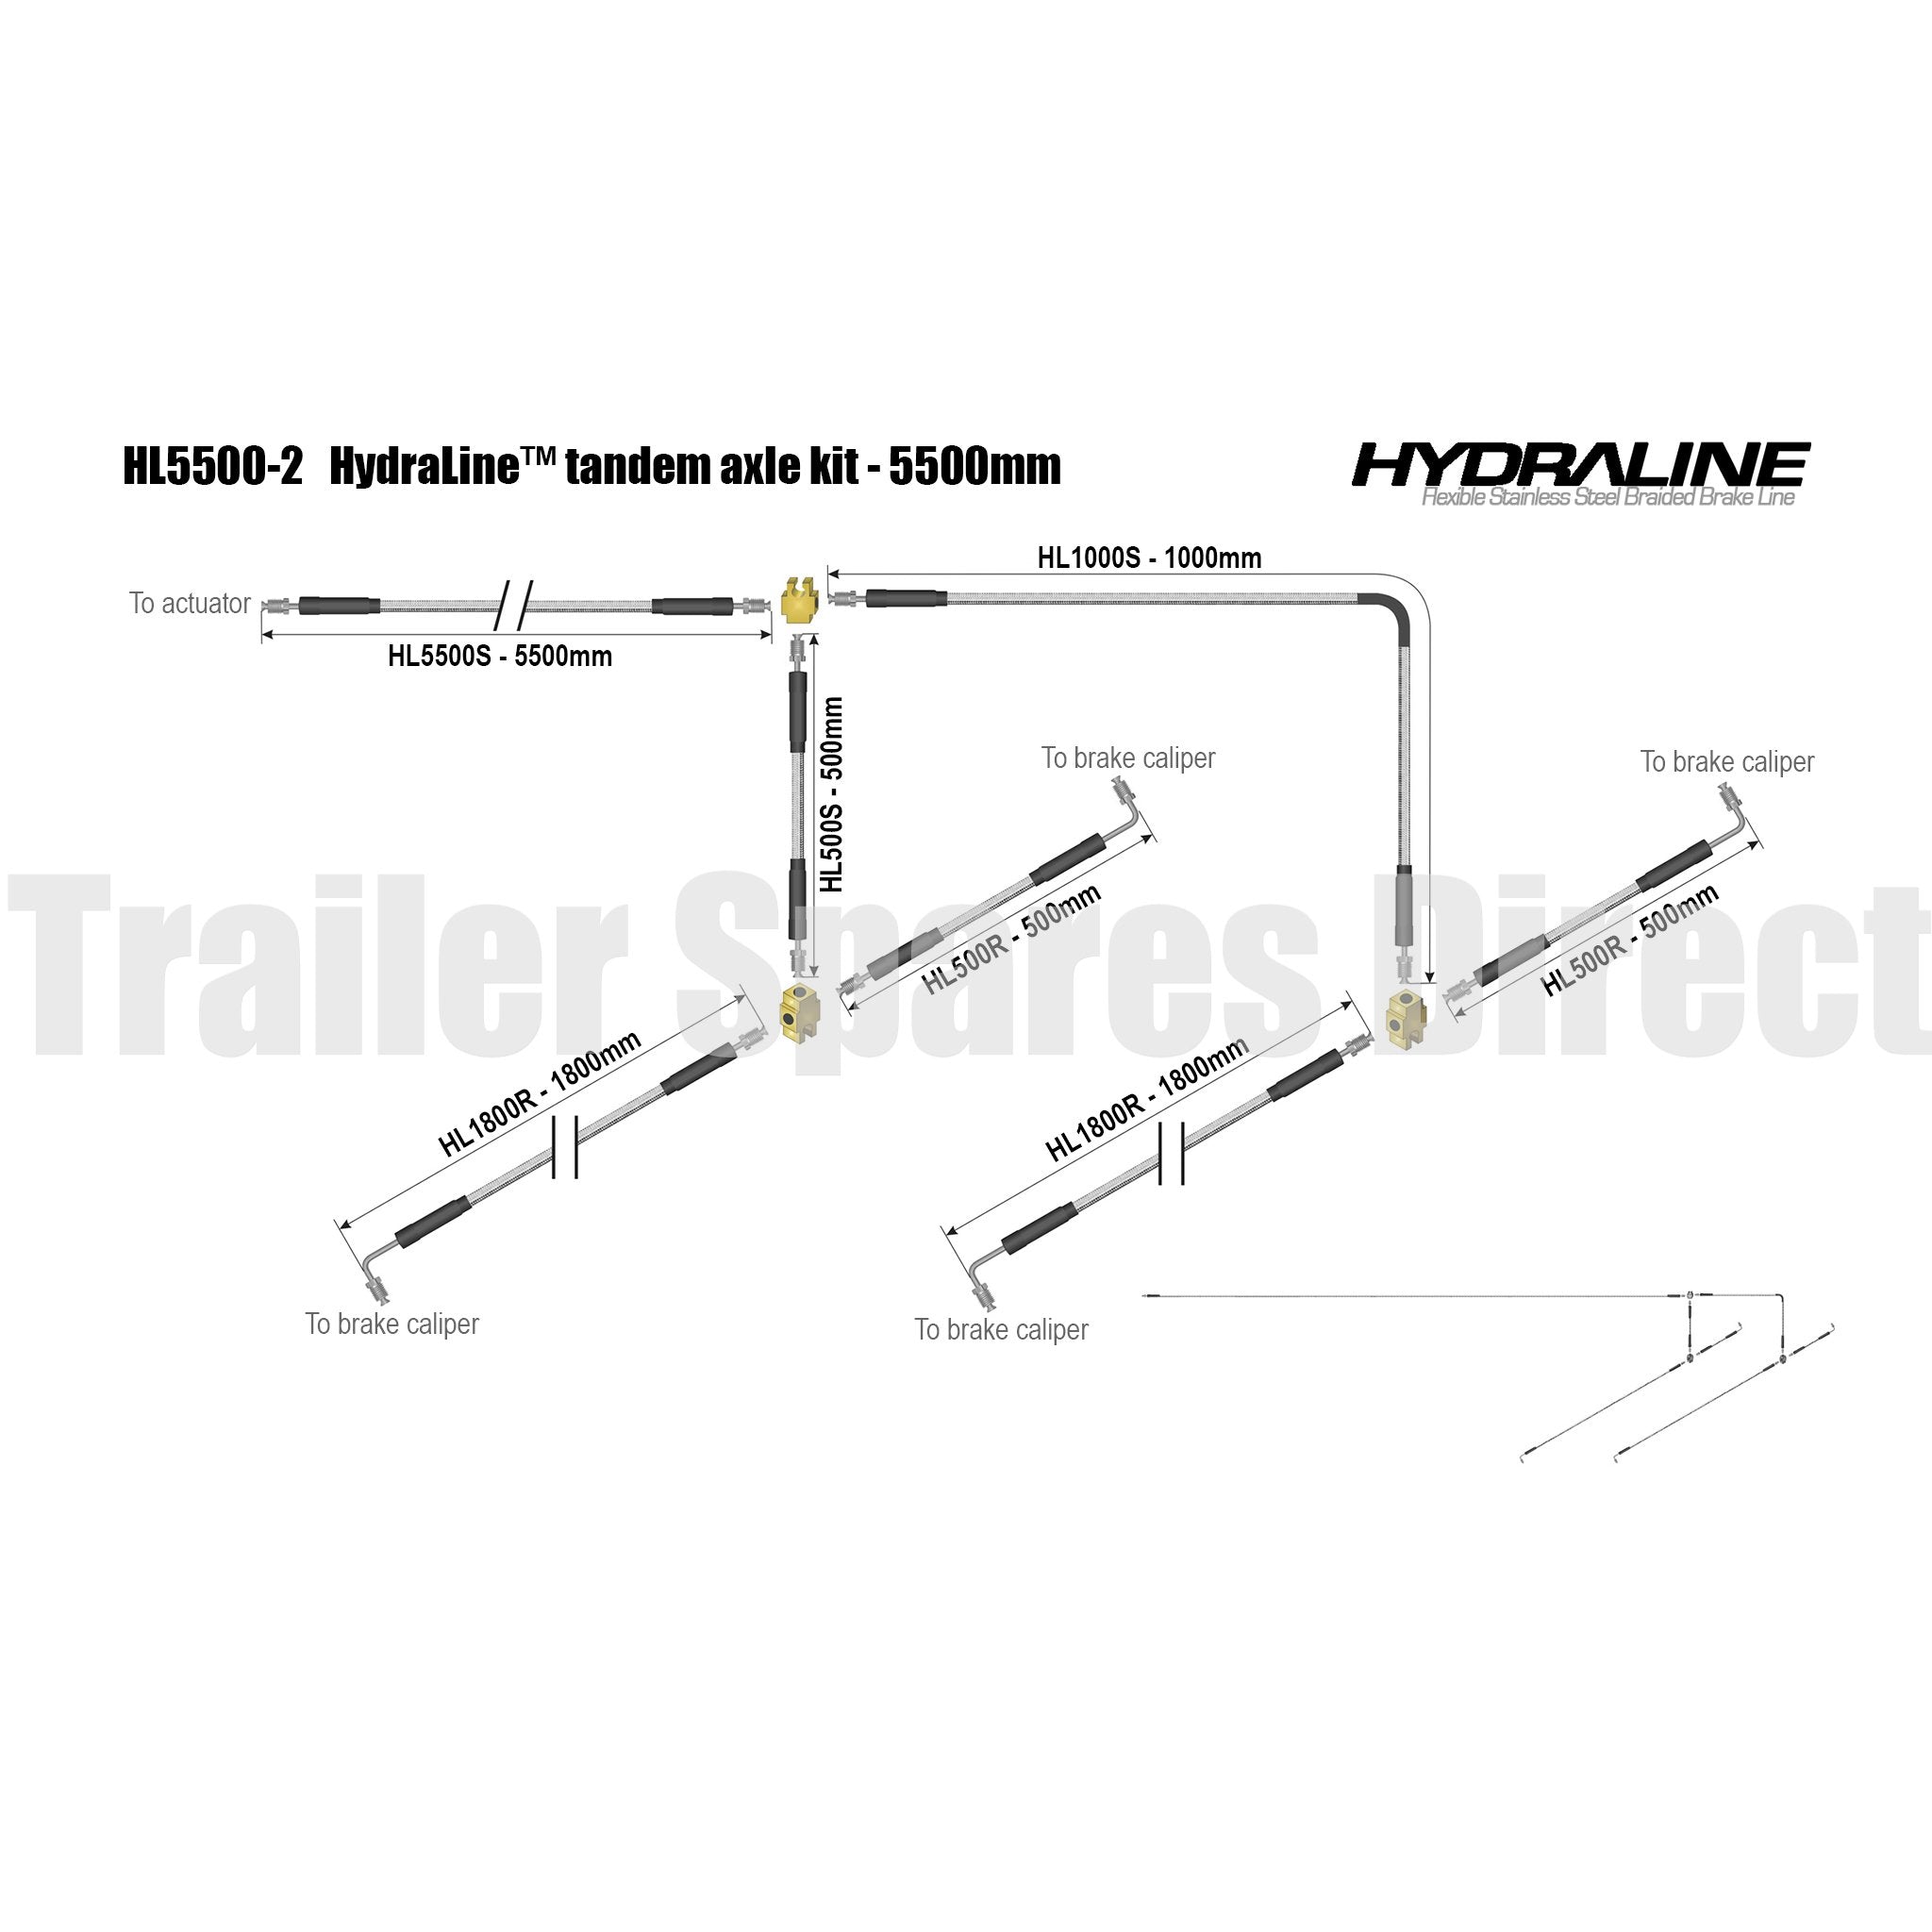 Hydraline kit 5500mm tandem axle diagram